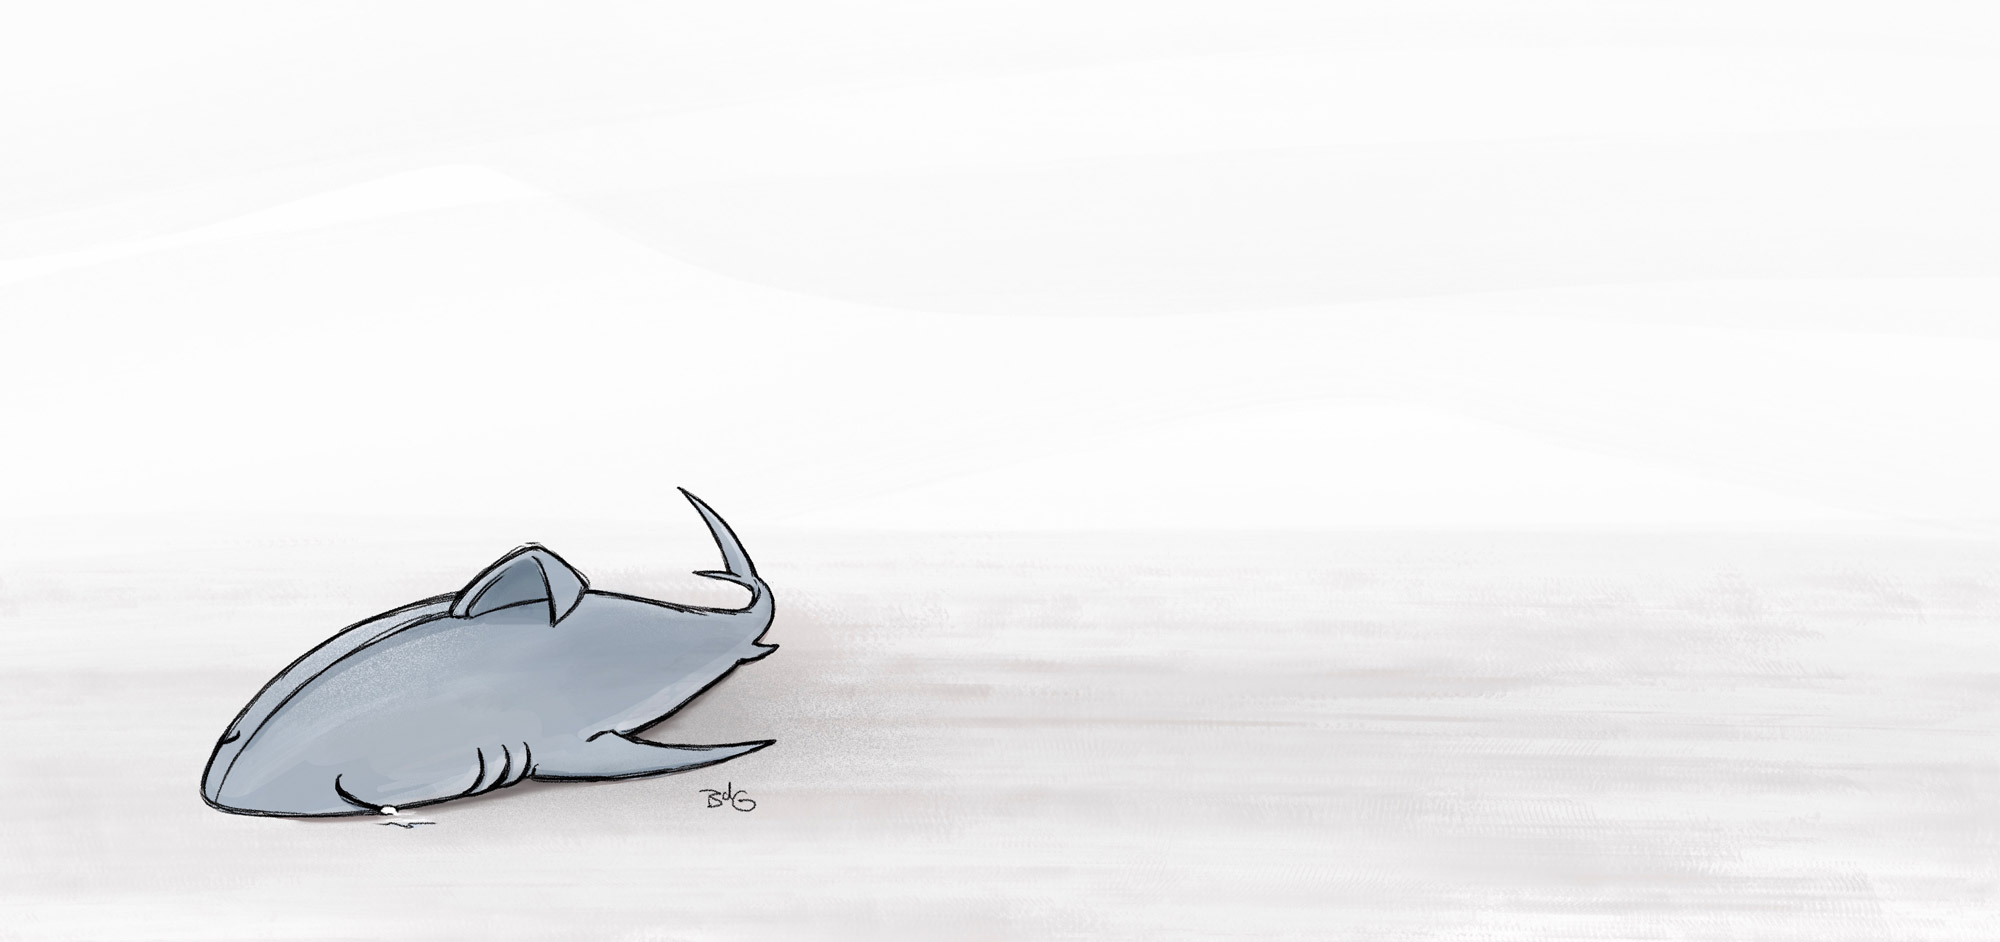 Crying shark illustration - Copyright Brenda de Groot